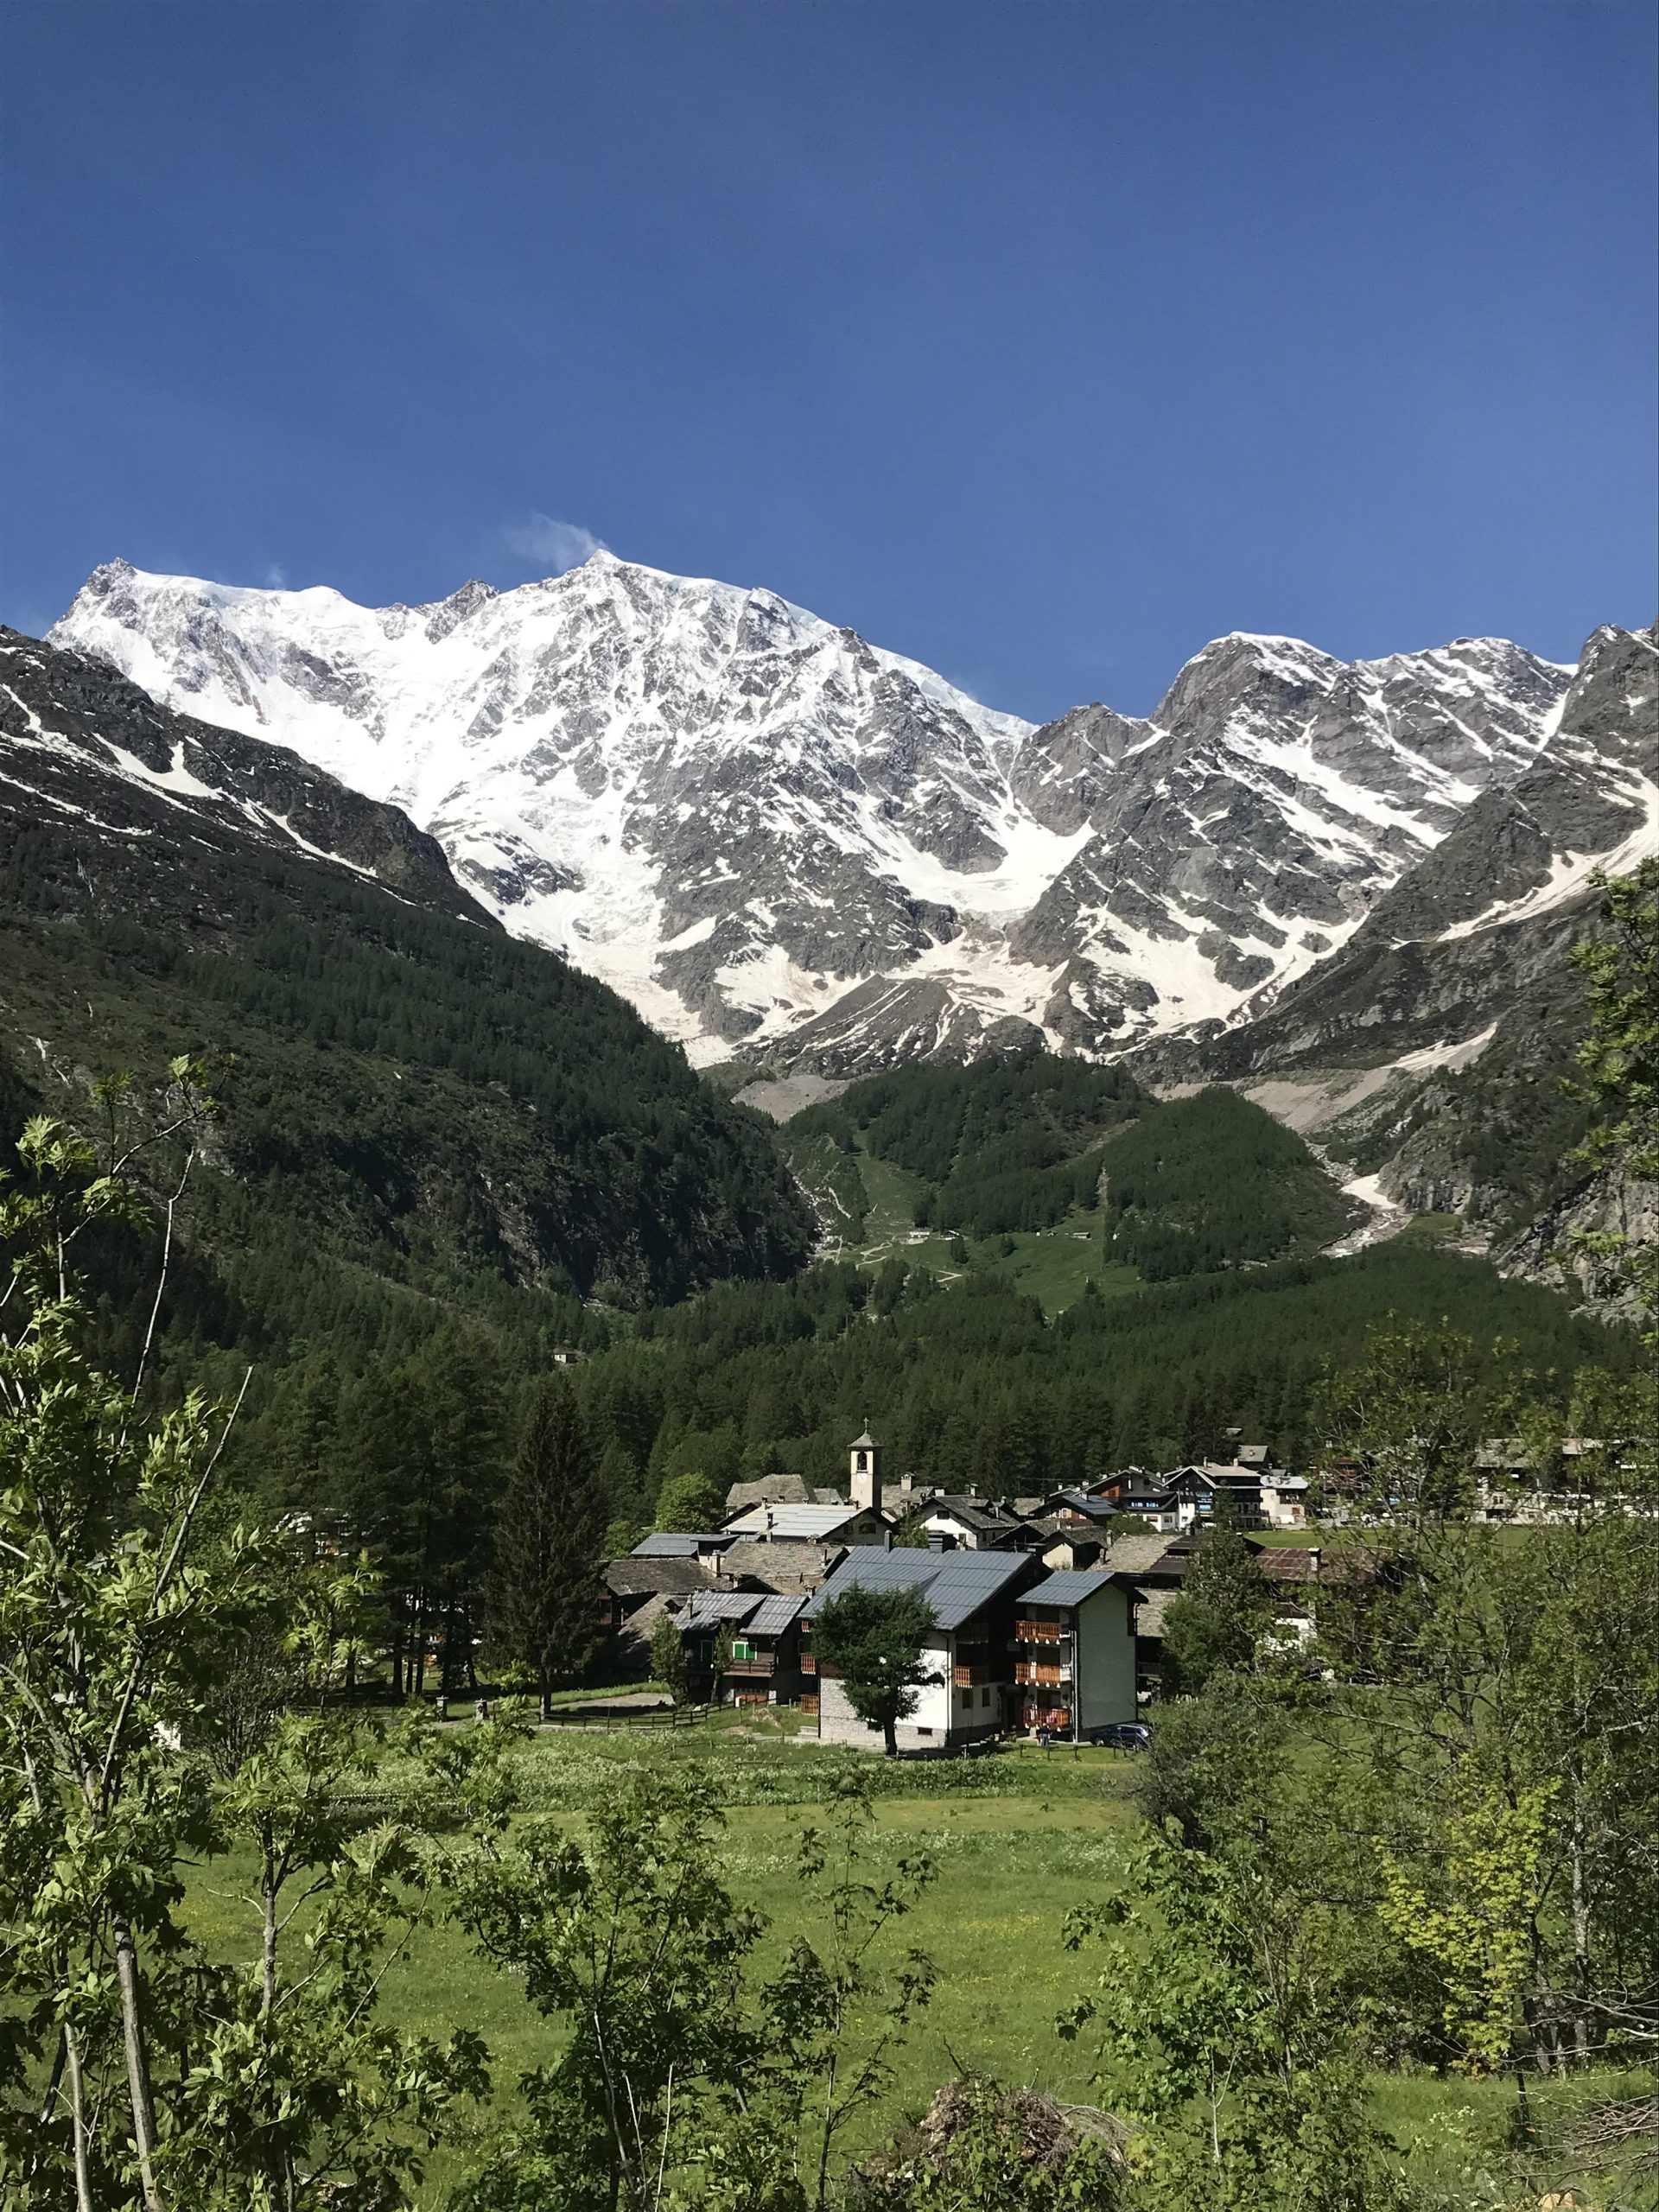 Gressoney. “WALK OF LIFE” – Proposta di esperienza immersiva in montagna per l’estate 2020